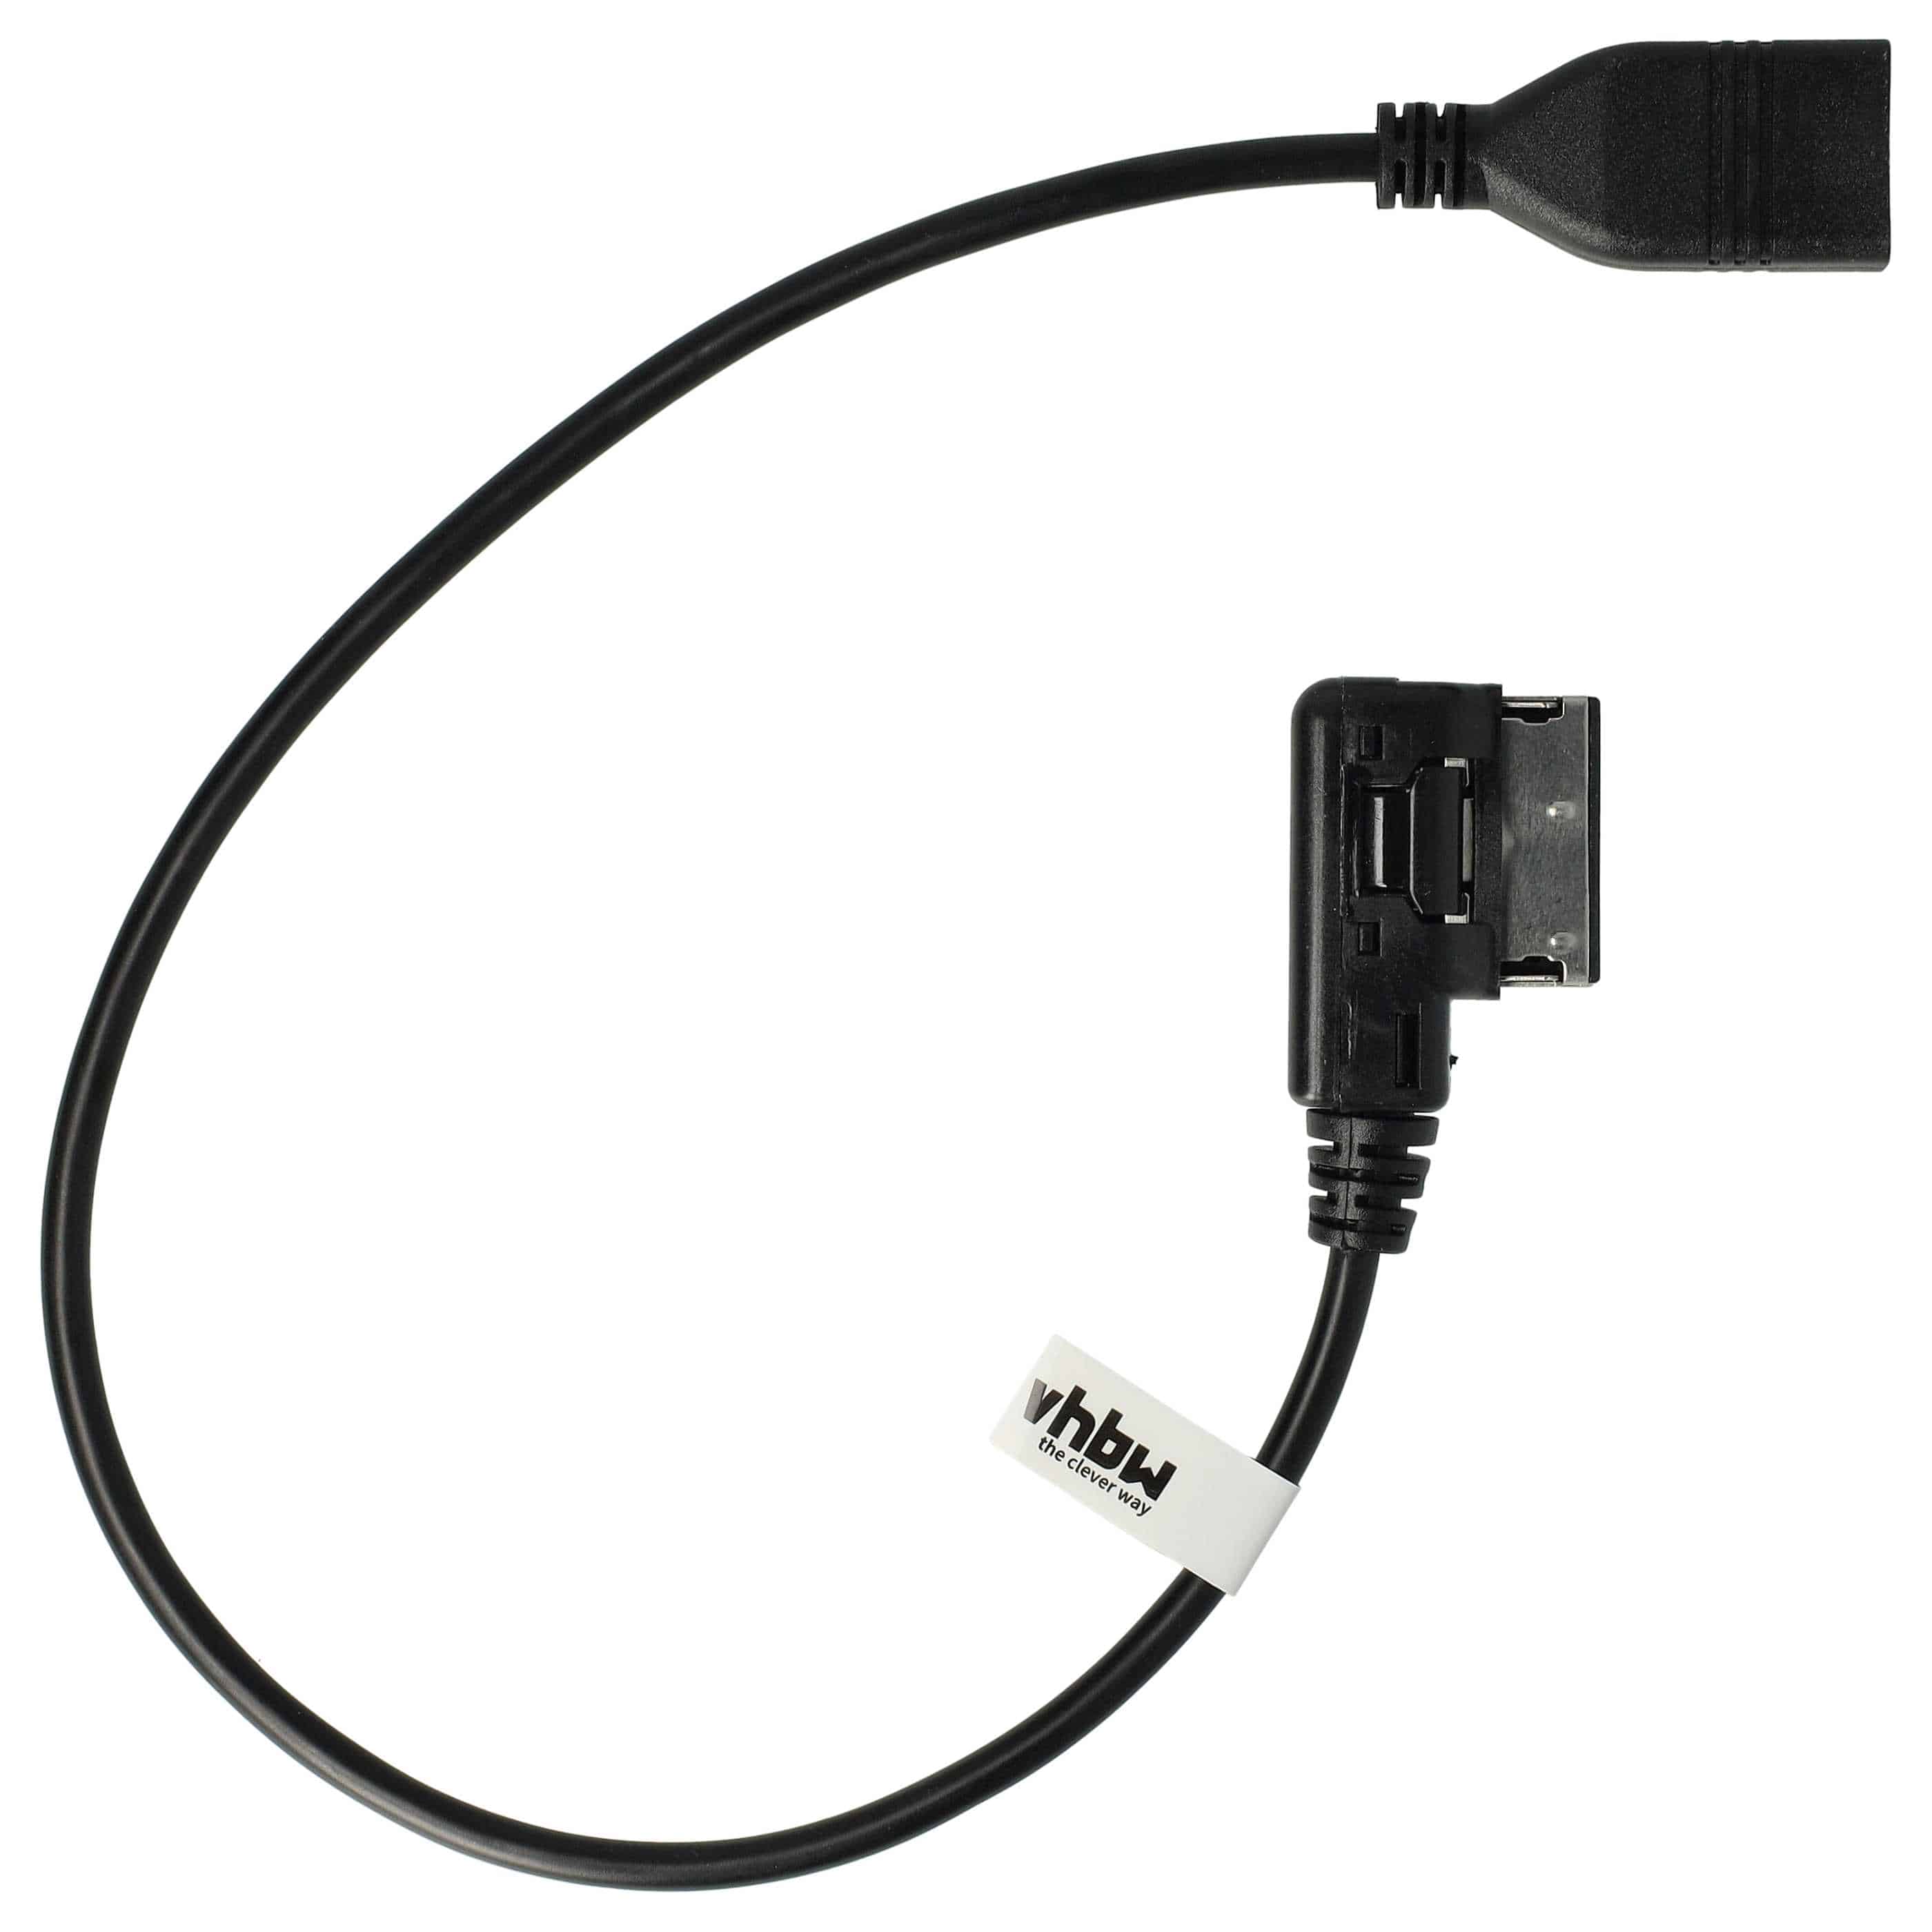 Audio Kabel passend für Audi Auto, Fahrzeug u.a. - USB-Adapter, 37,1 cm lang